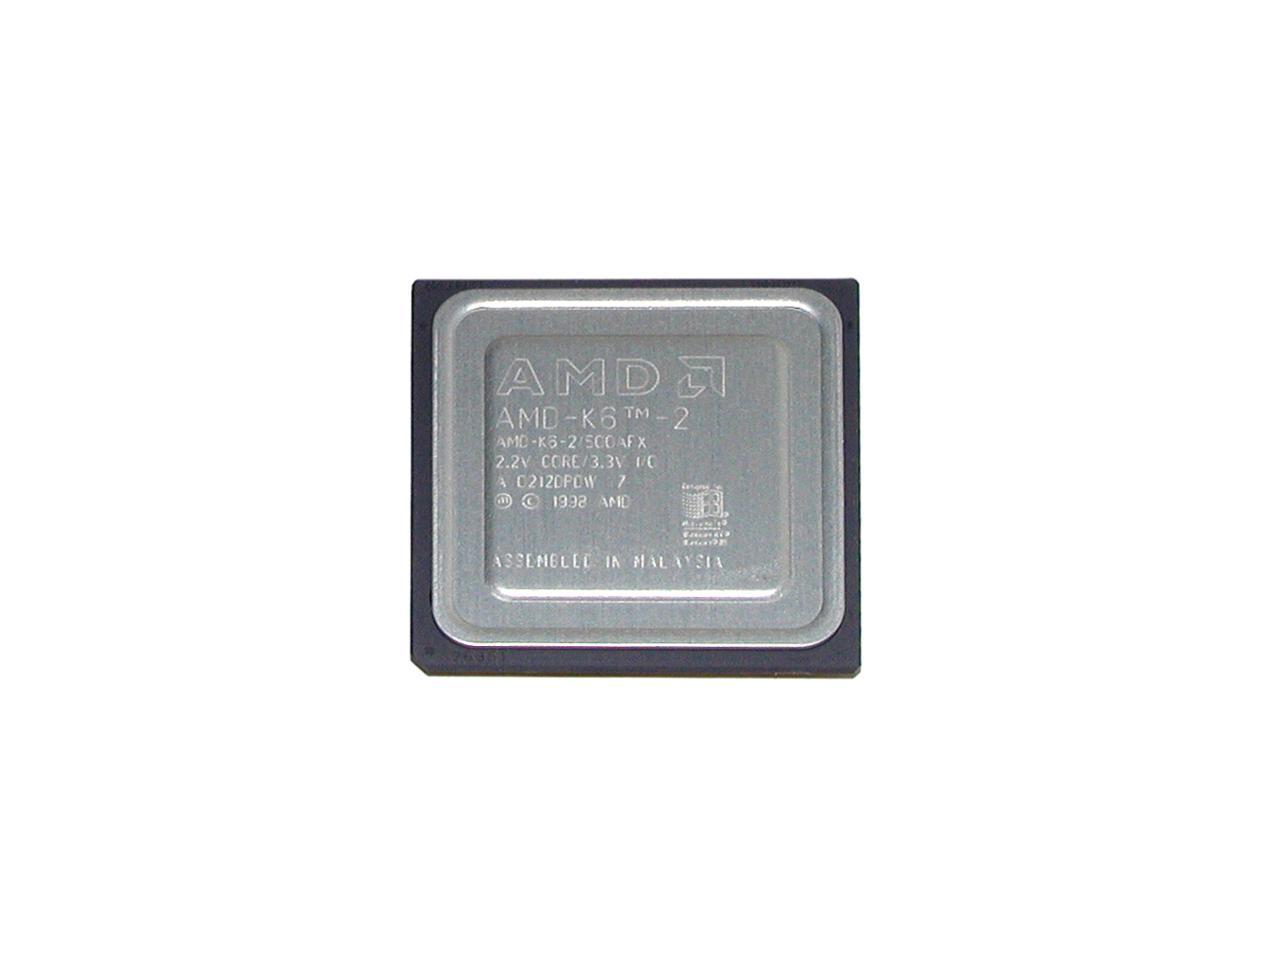 AMD K6-2 Chomper 500 MHz Socket 7 K62500AFX-N Processor